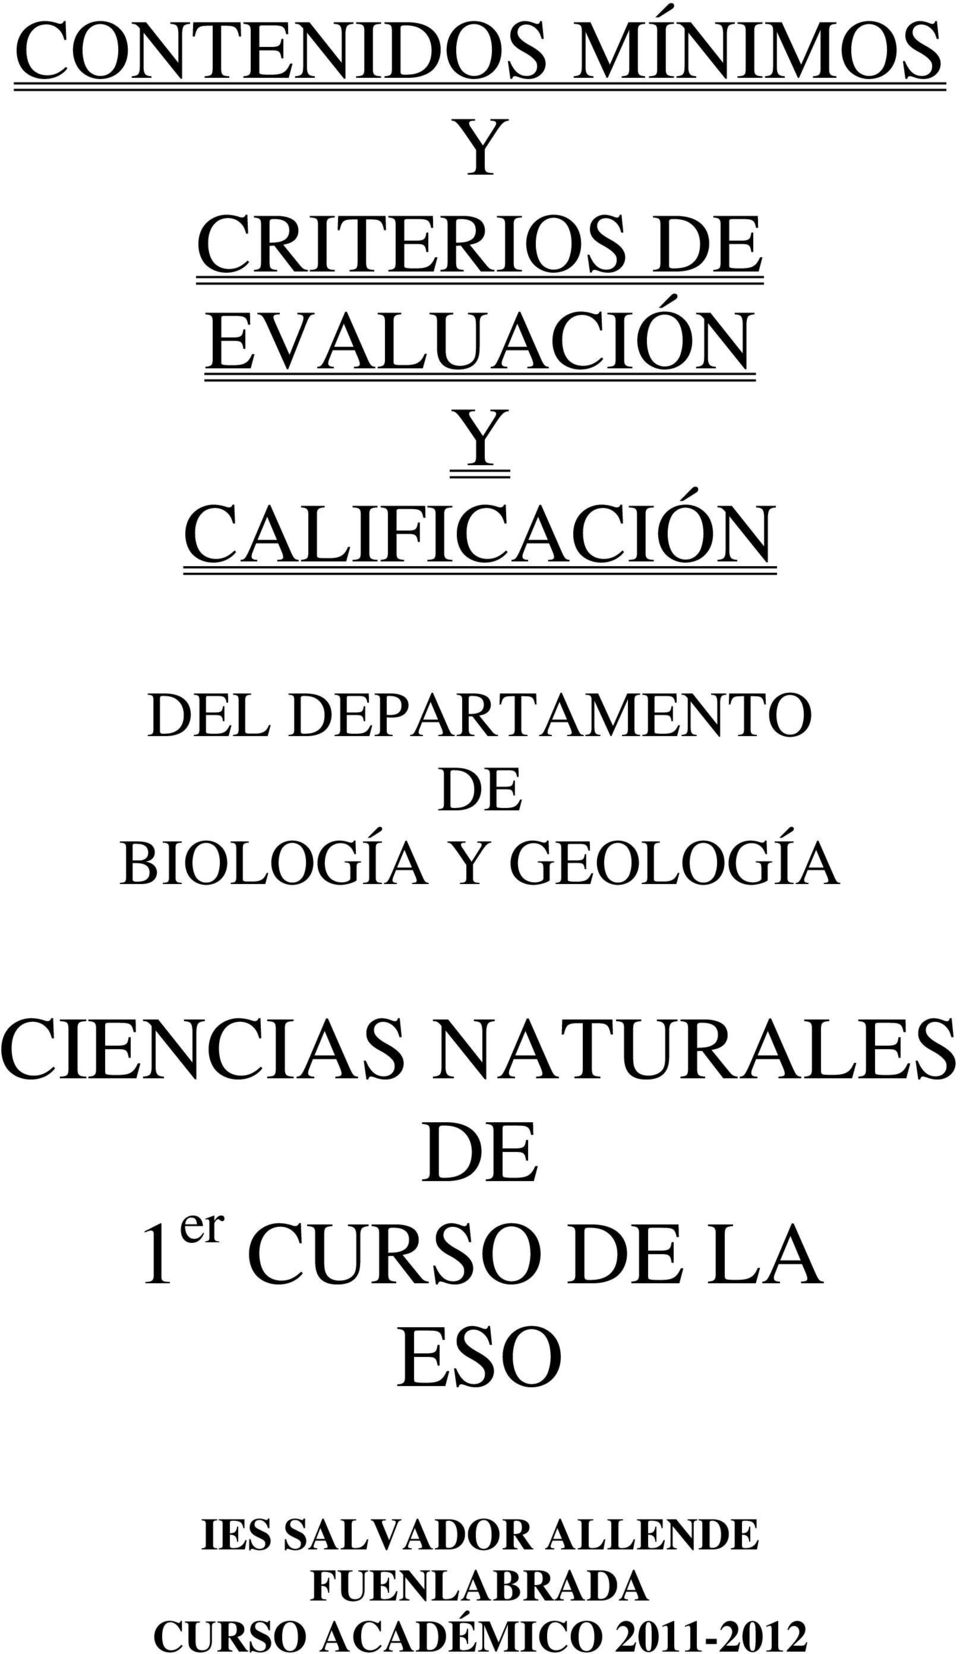 GEOLOGÍA CIENCIAS NATURALES DE 1 er CURSO DE LA